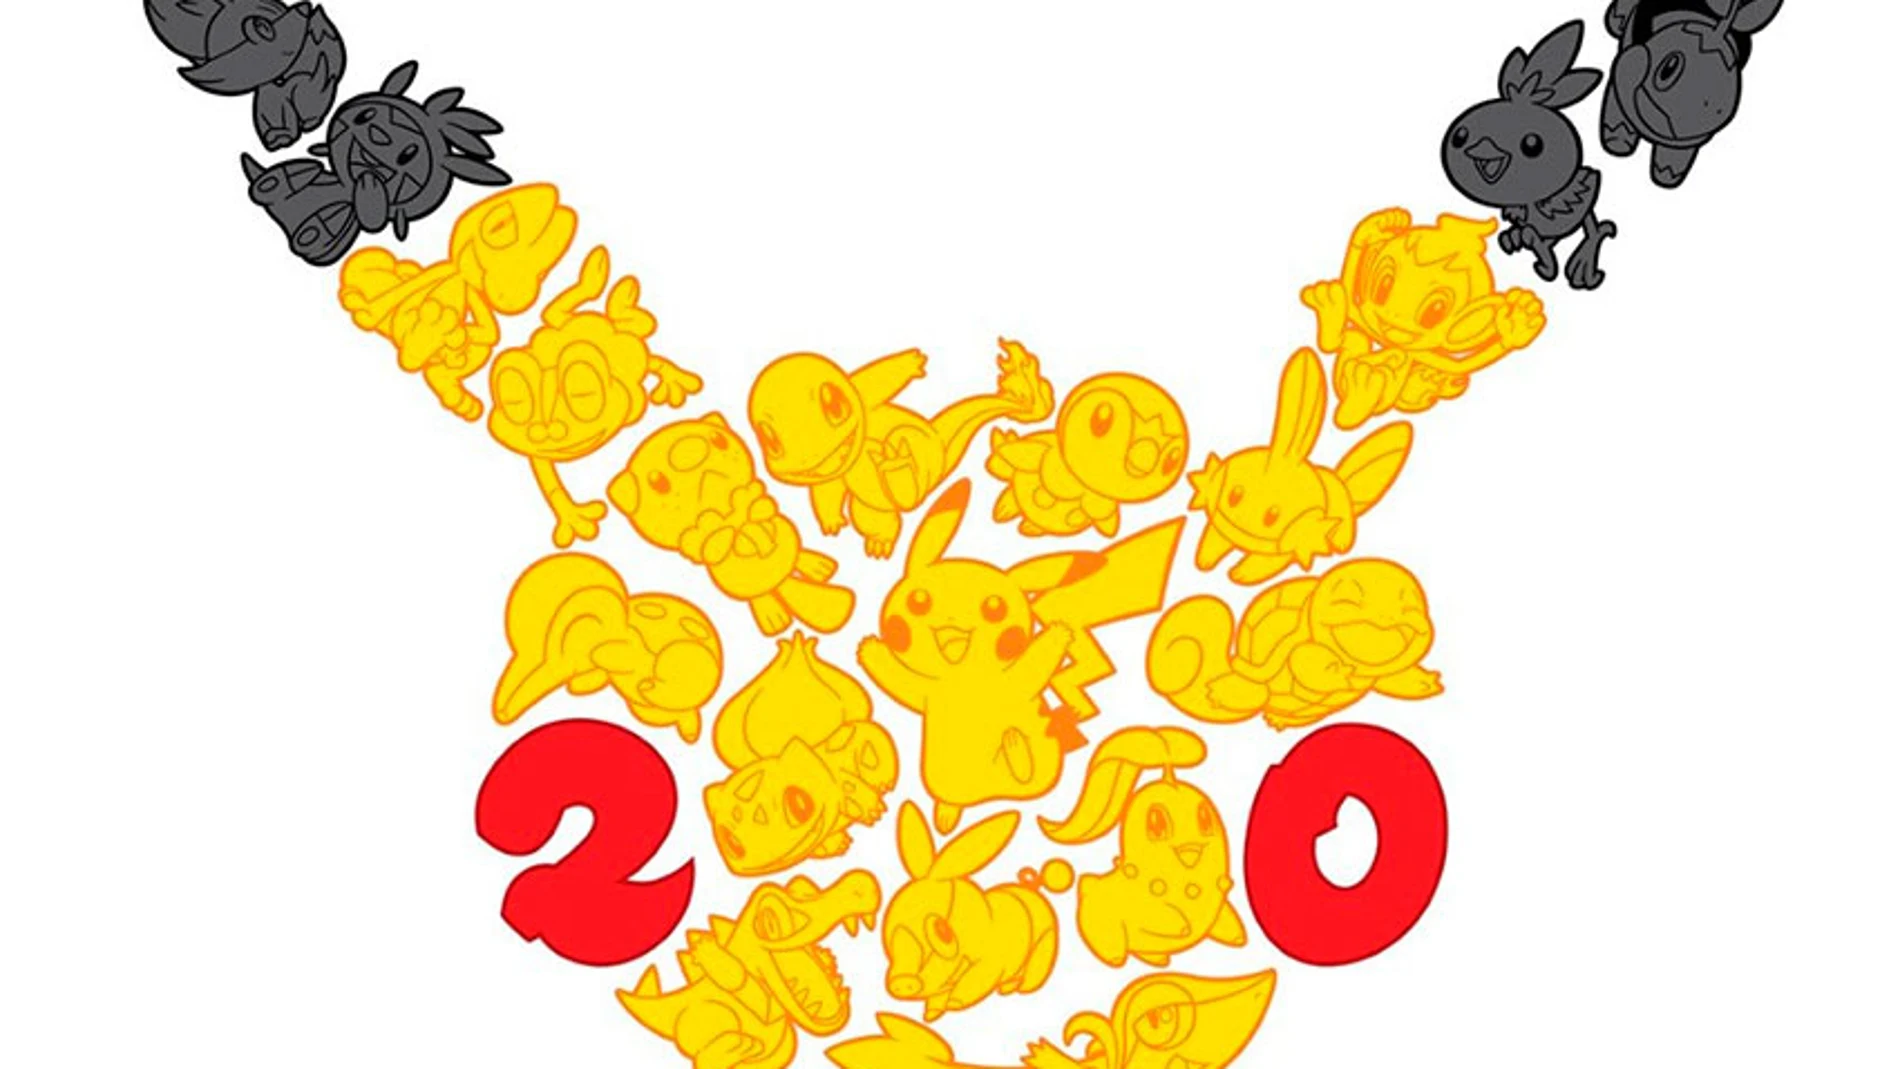 El 20º aniversario de la franquicia Pokémon traerá nuevos productos para 3DS y 2DS